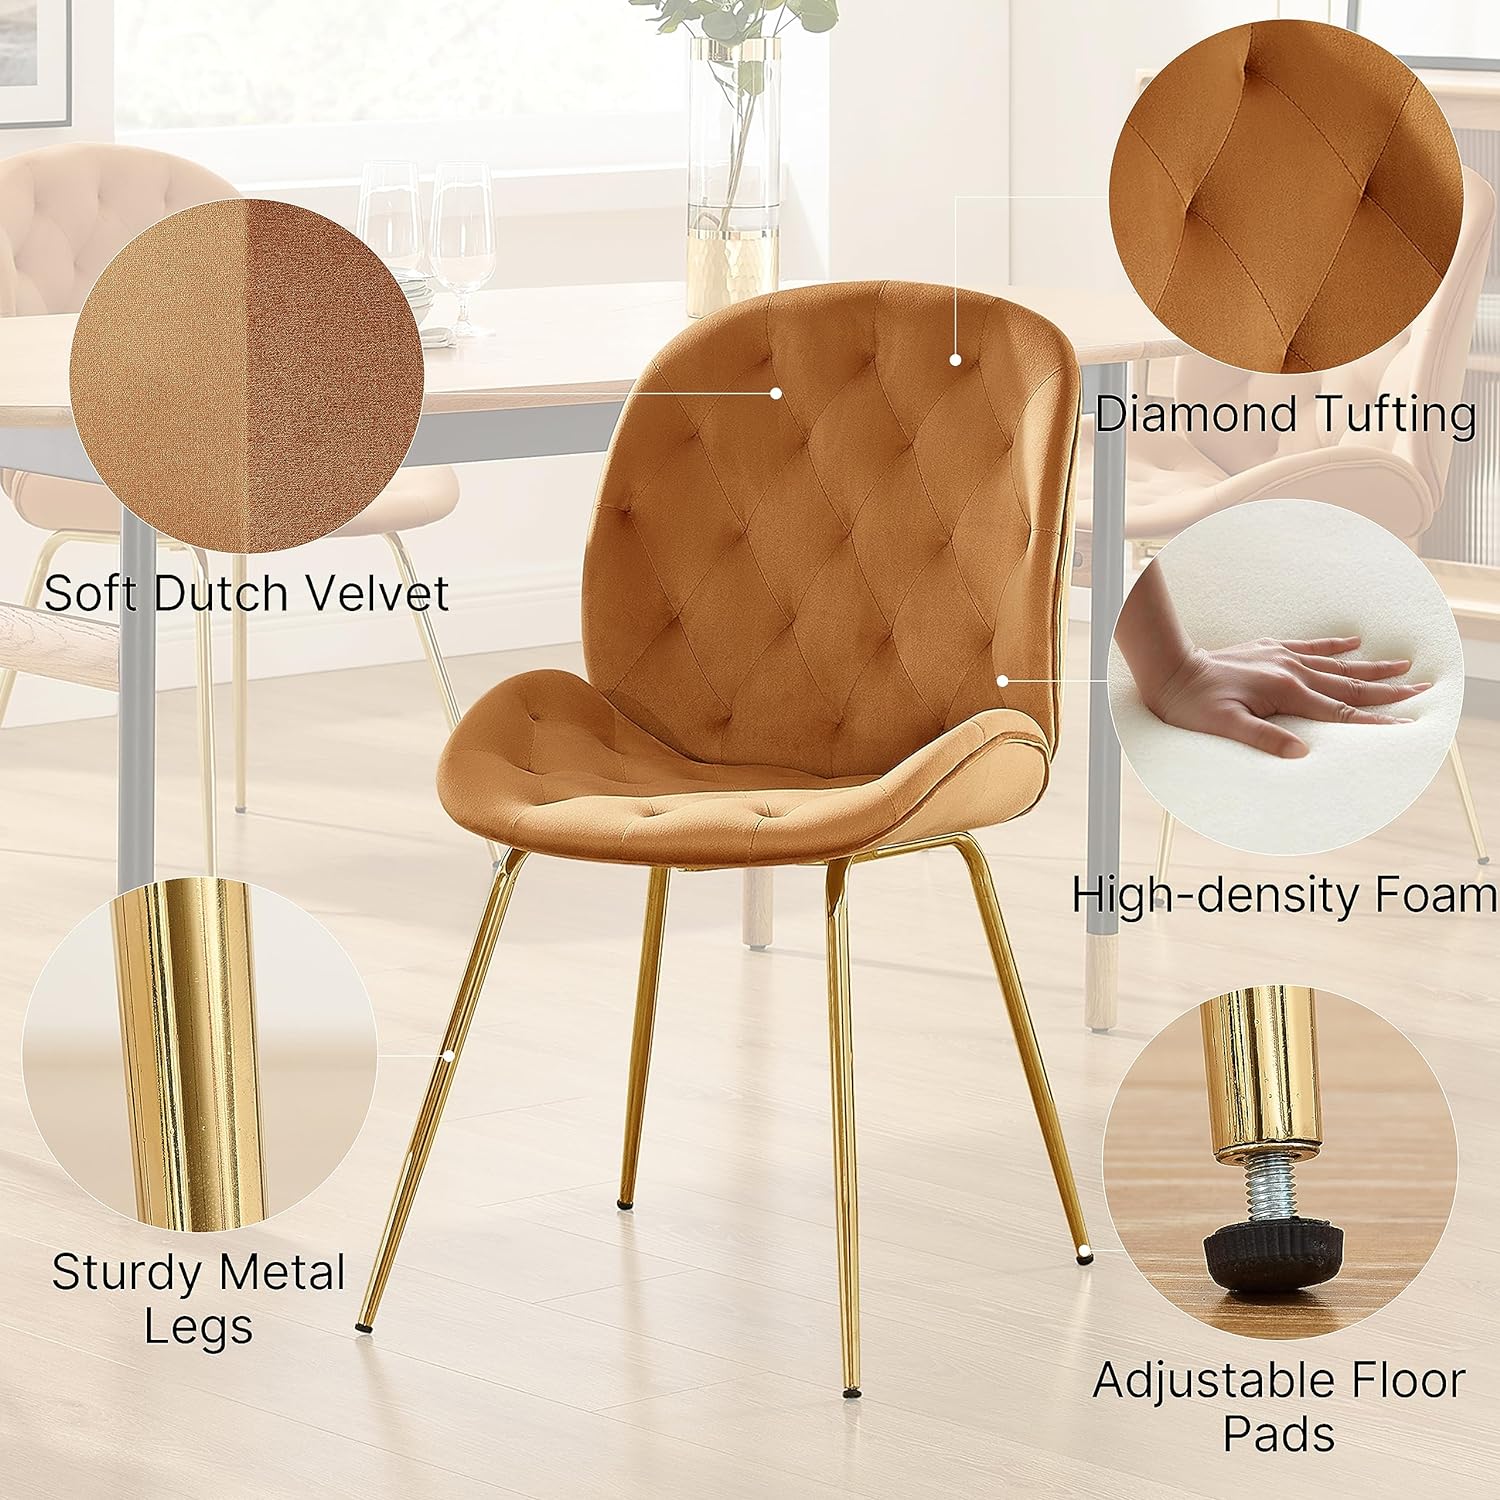 Silla de tocador, silla de comedor tapizada de terciopelo moderno de mediados